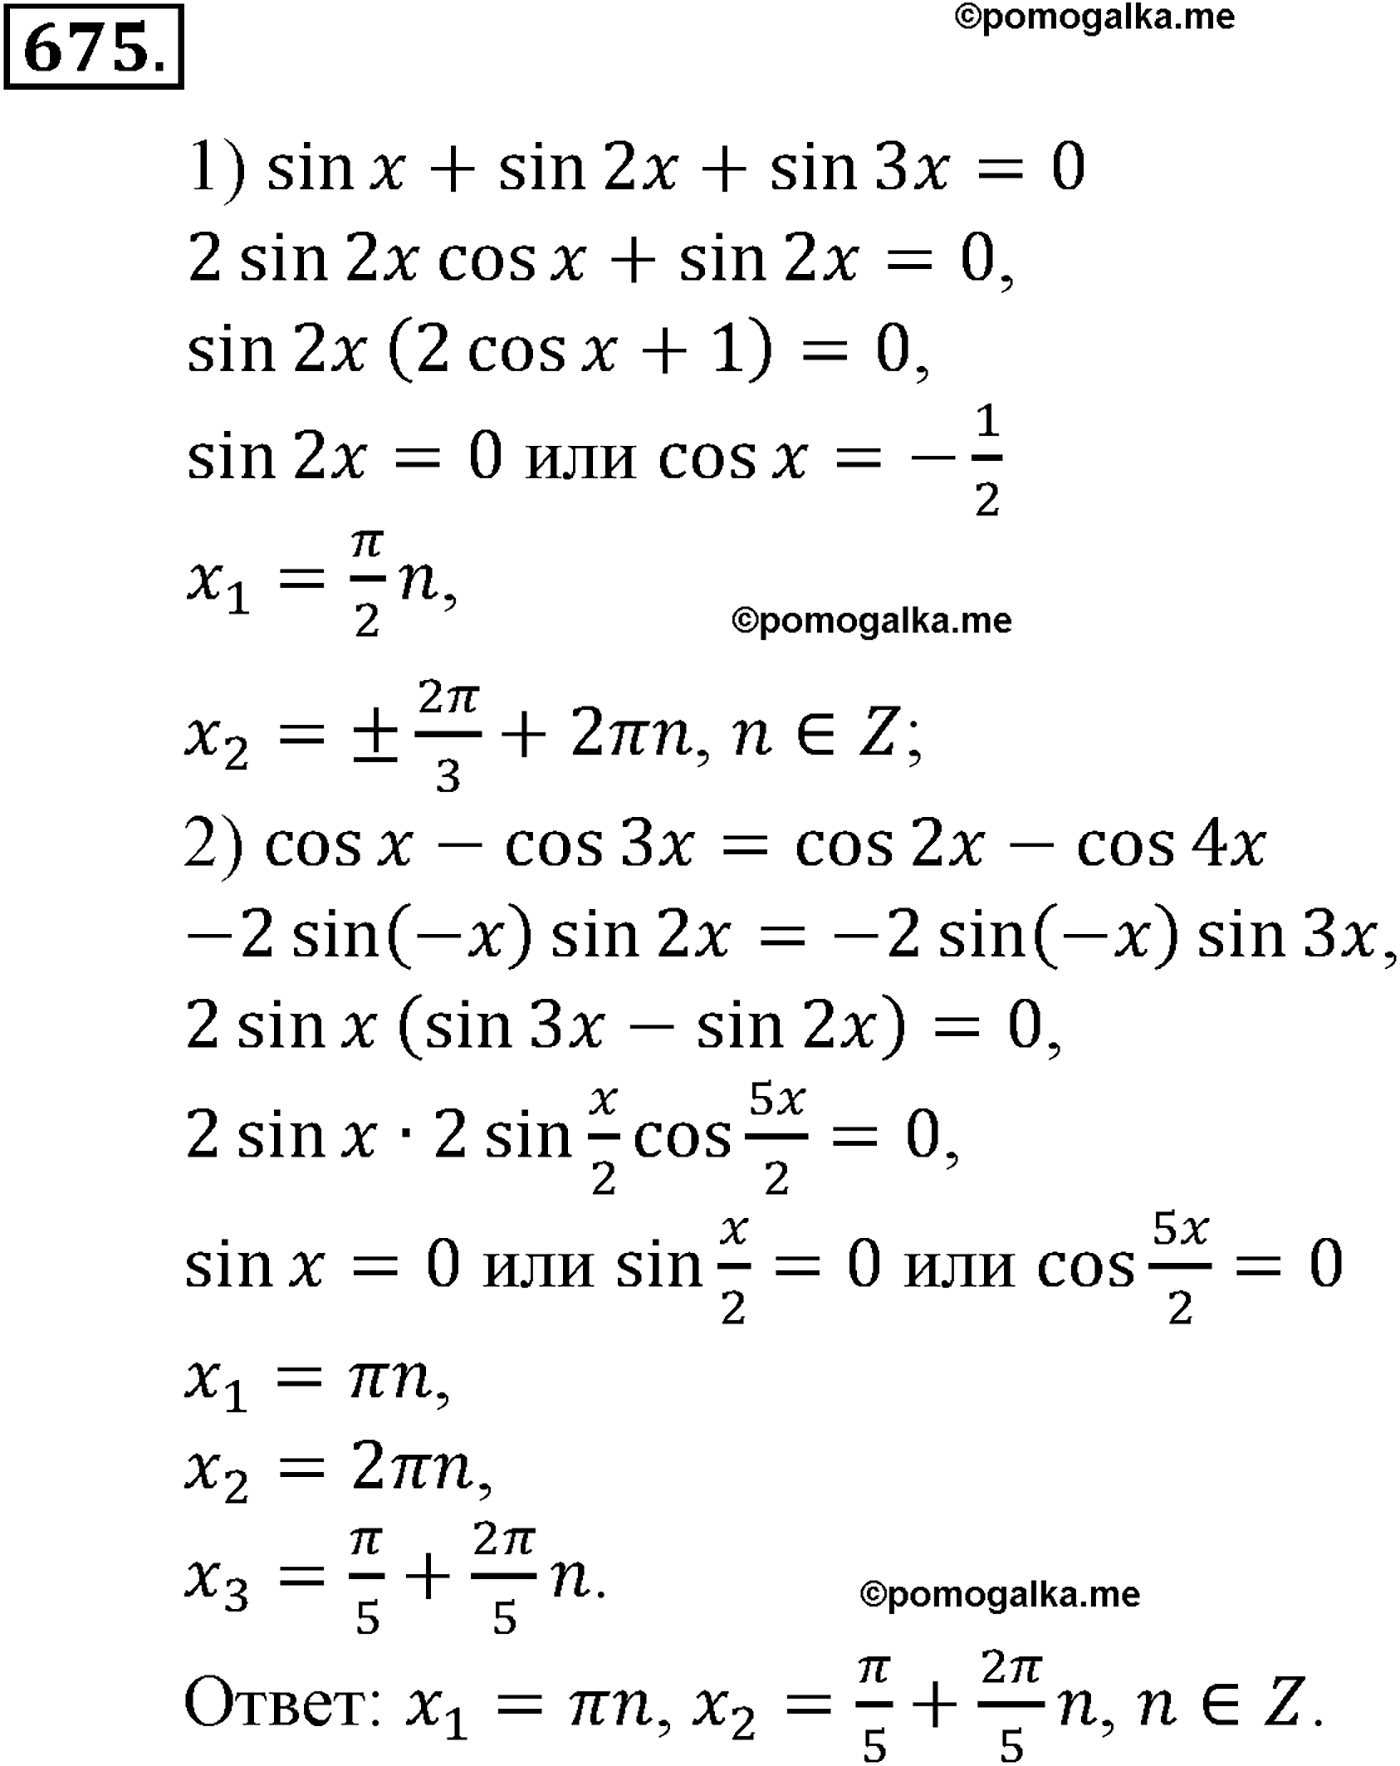 разбор задачи №675 по алгебре за 10-11 класс из учебника Алимова, Колягина